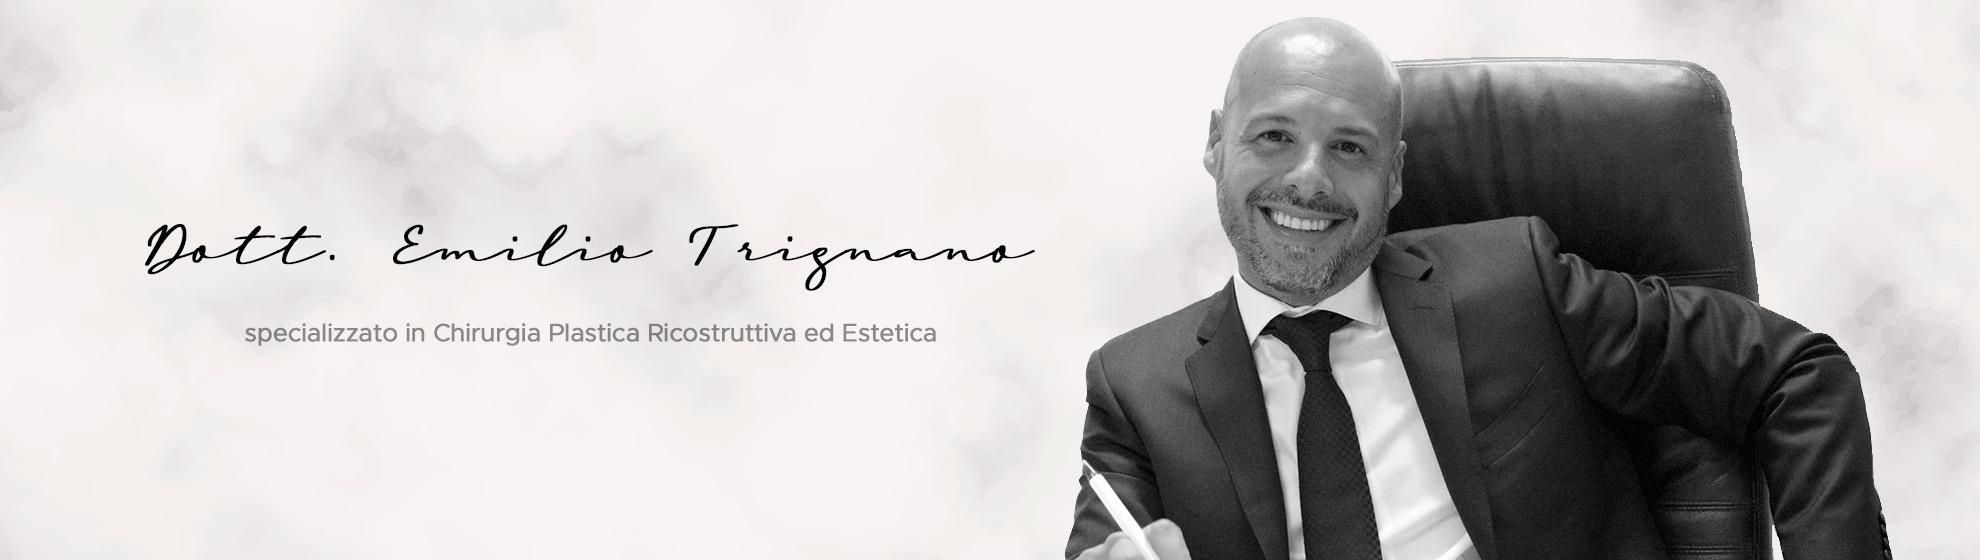 Prof. Emilio Trignano